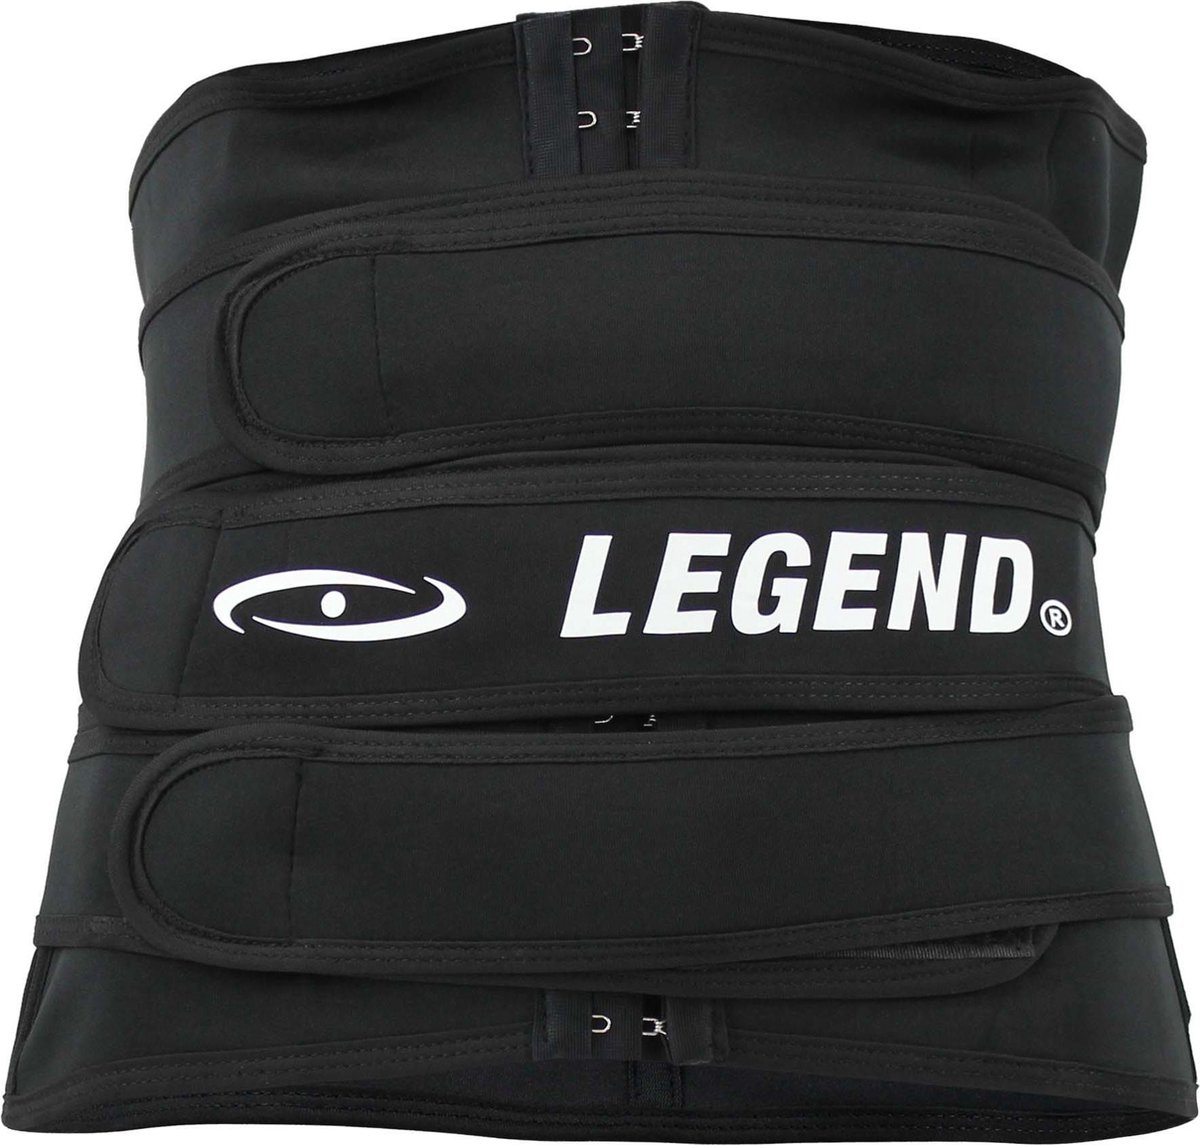 Legend Premium Waist trainer S